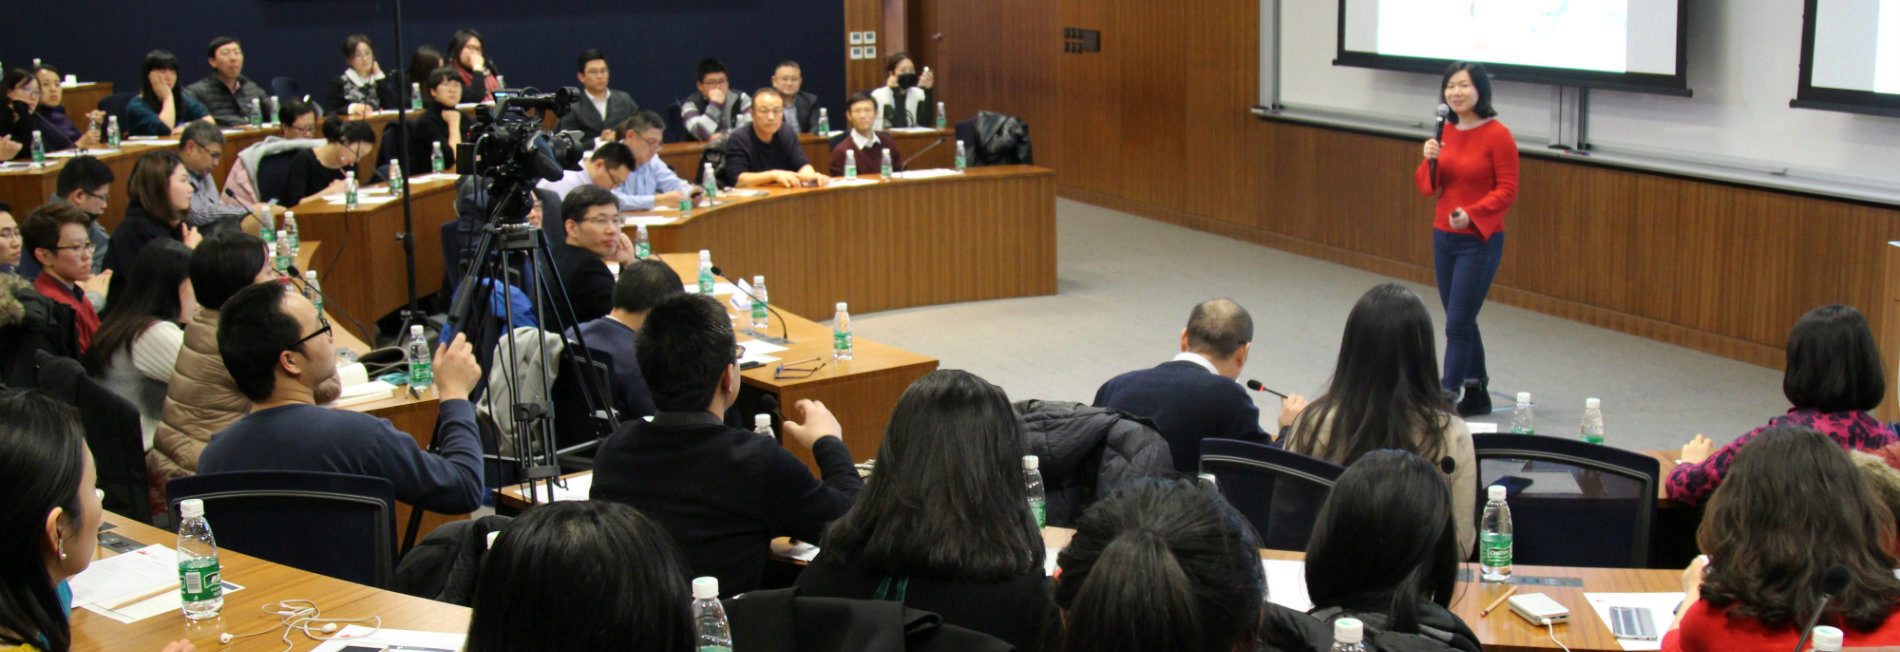 Lei Wang speaking at PWCC